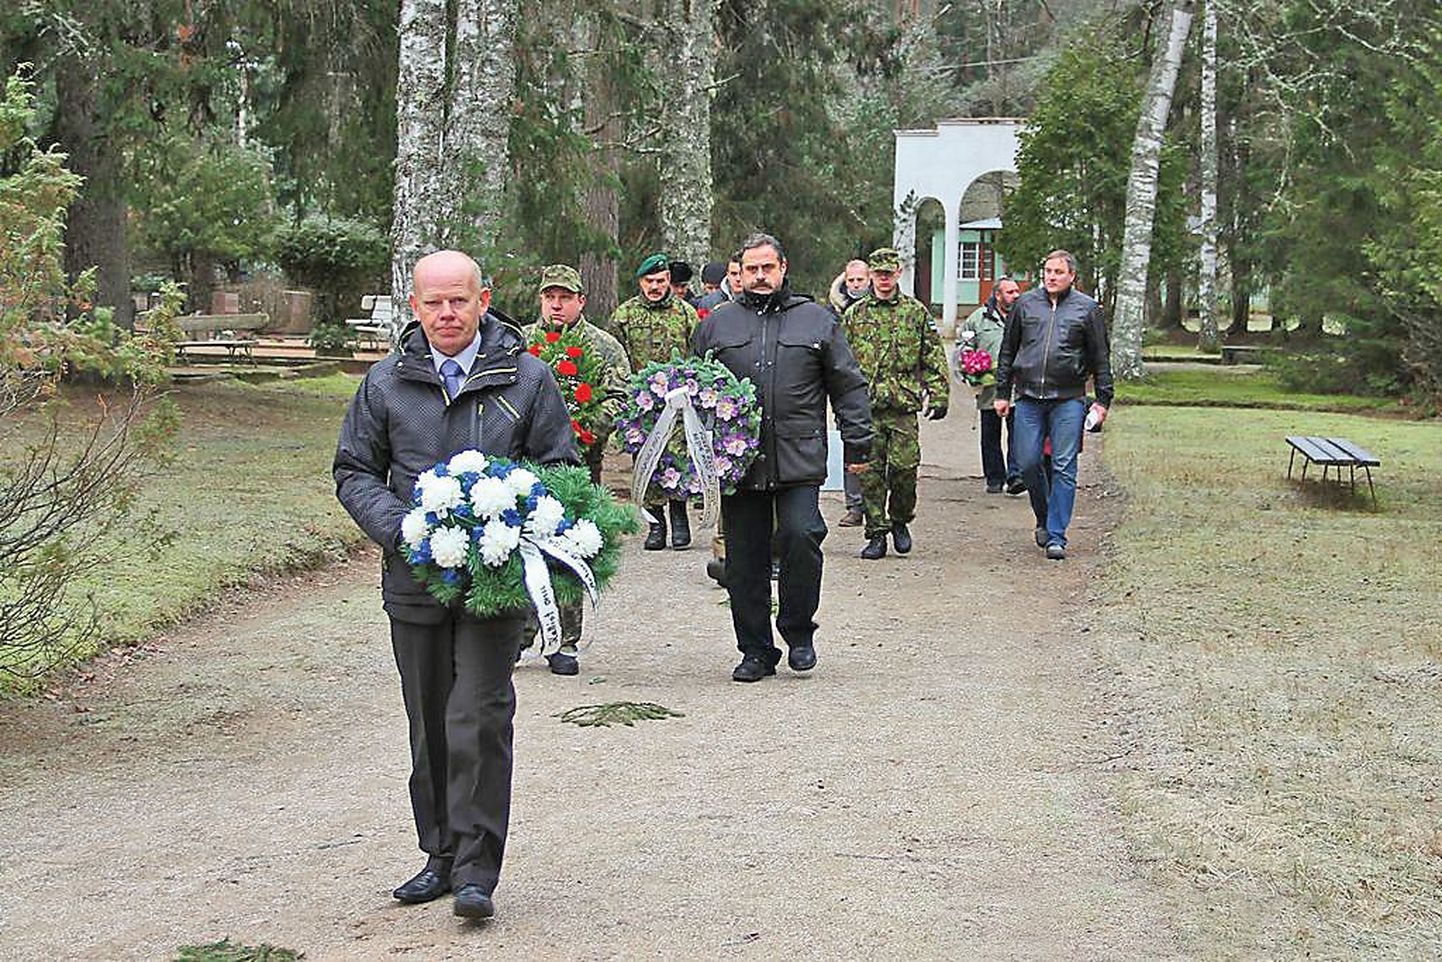 В субботу на кладбище в Эльва прошла траурно-торжественная церемония захоронения останков солдата Артура Хоопа, погибшего в годы войны в Крыму.